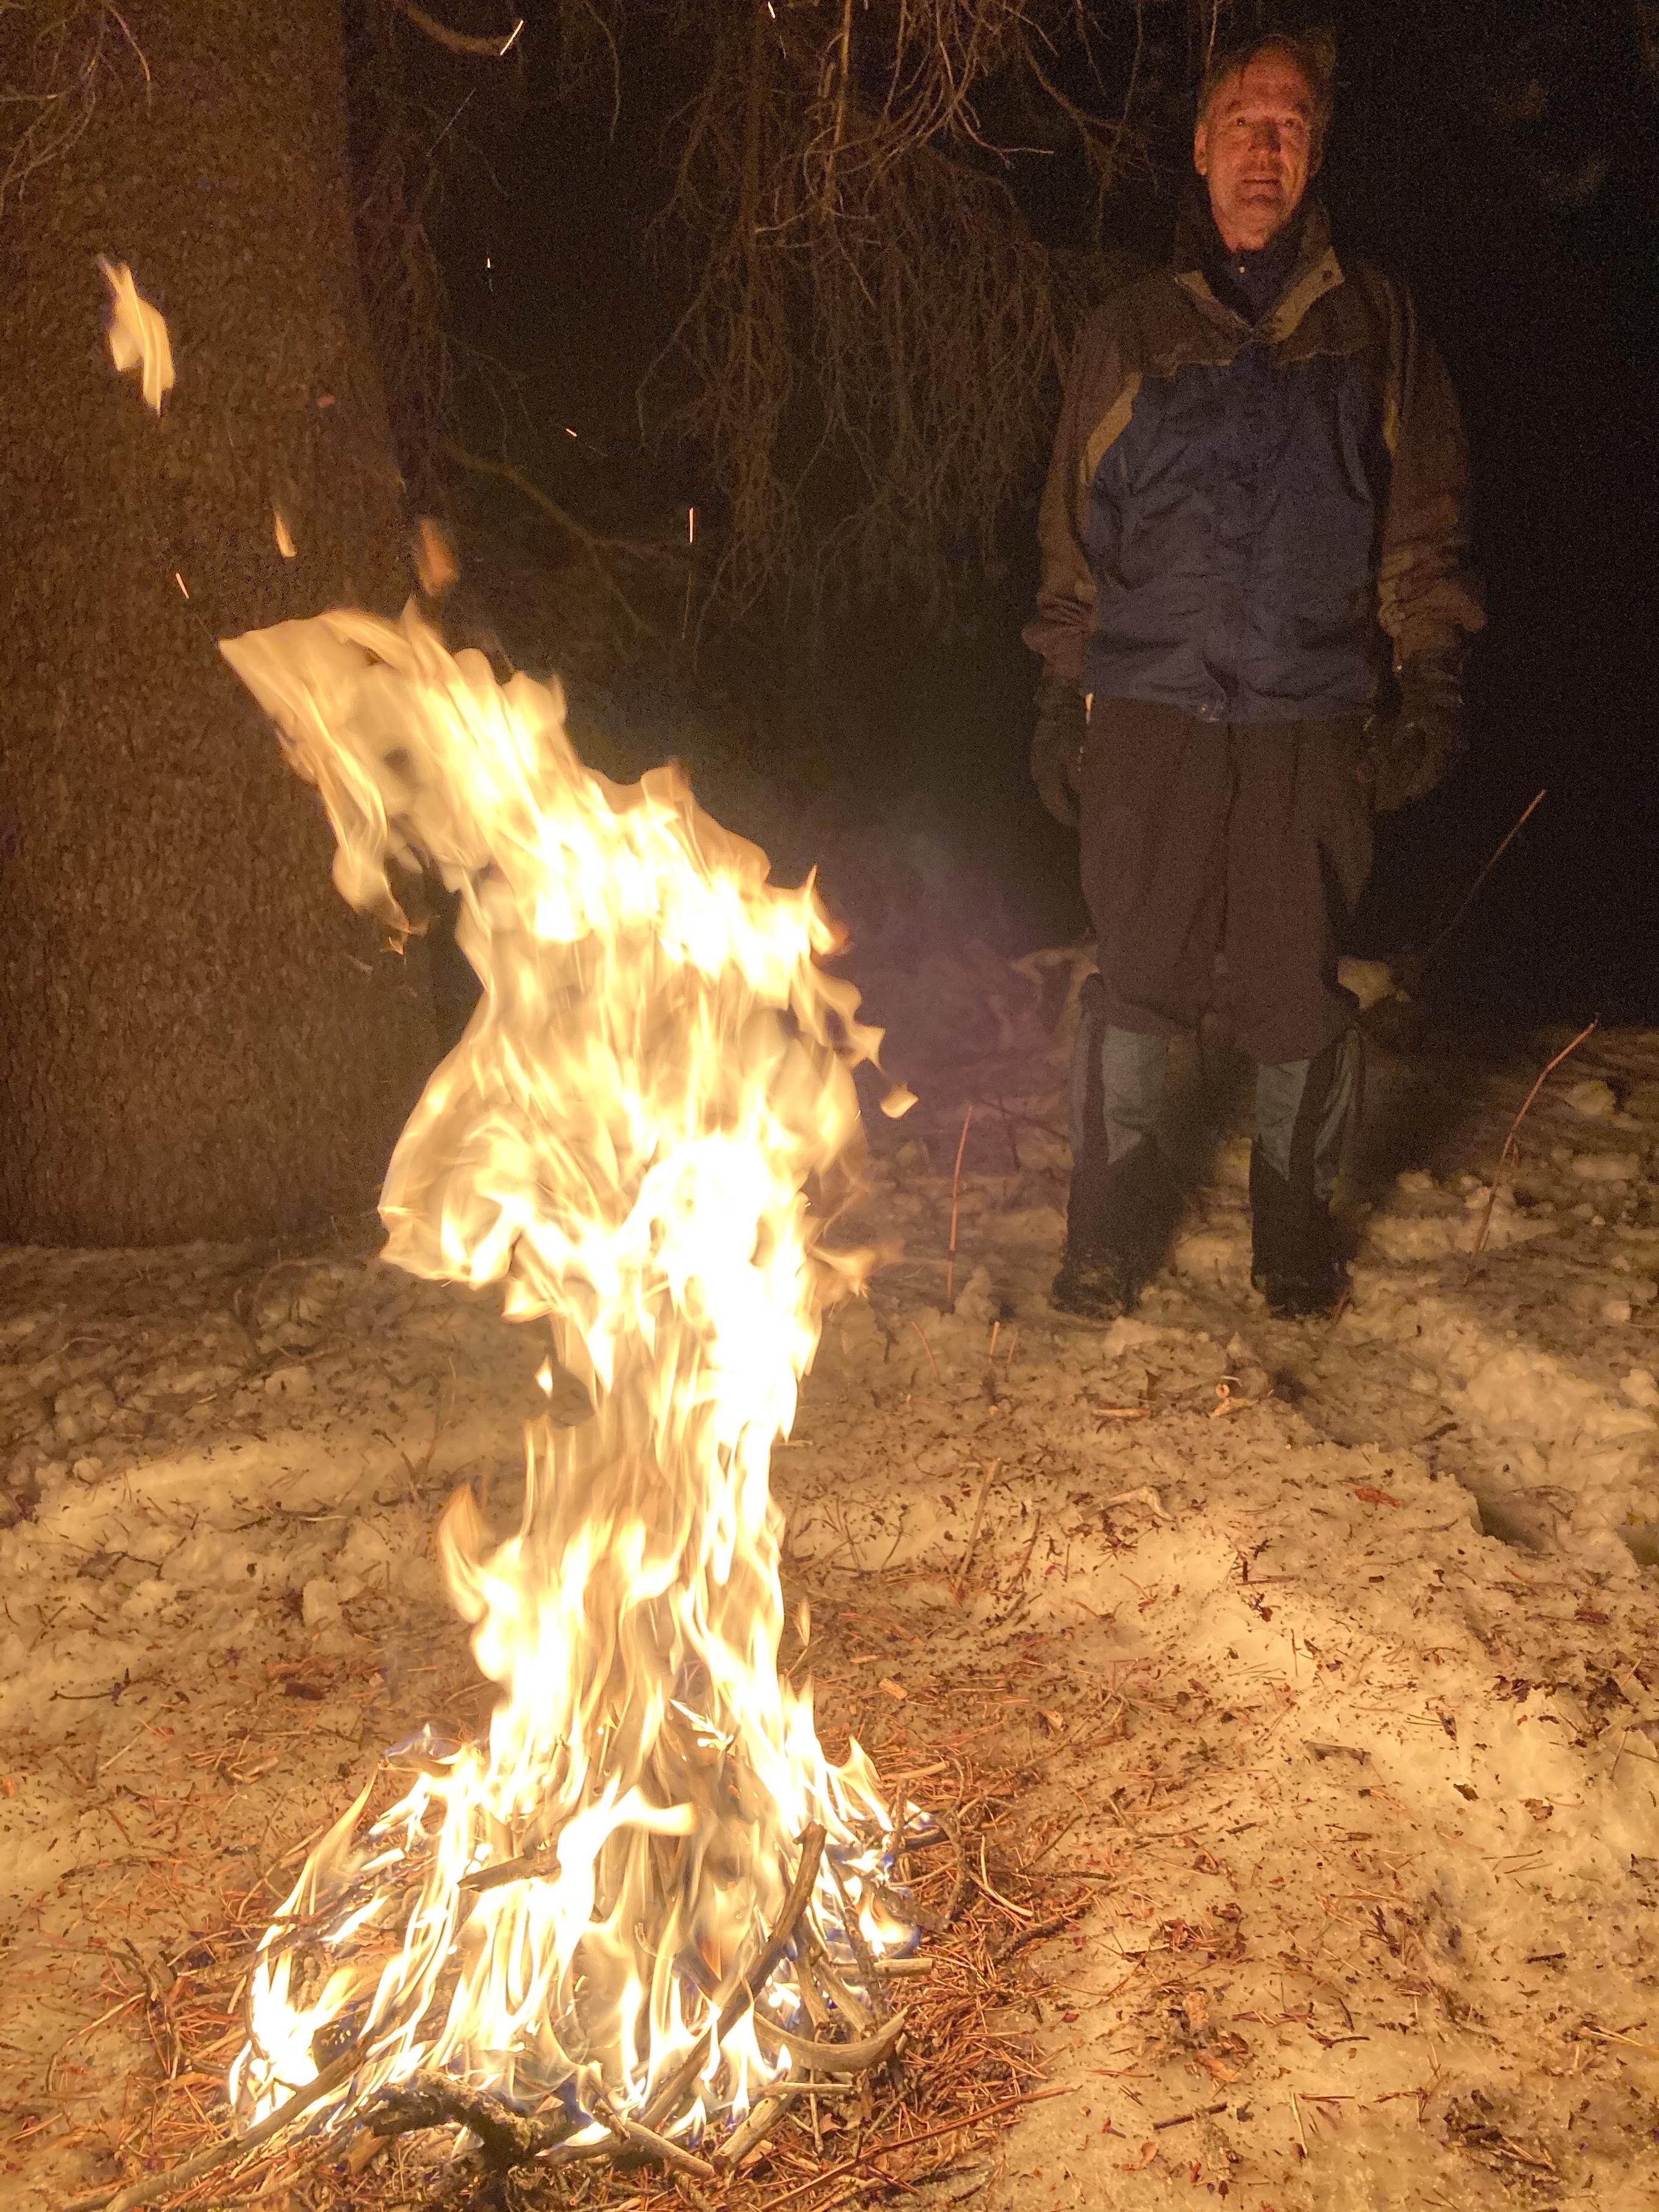 曼弗雷德在篝火旁